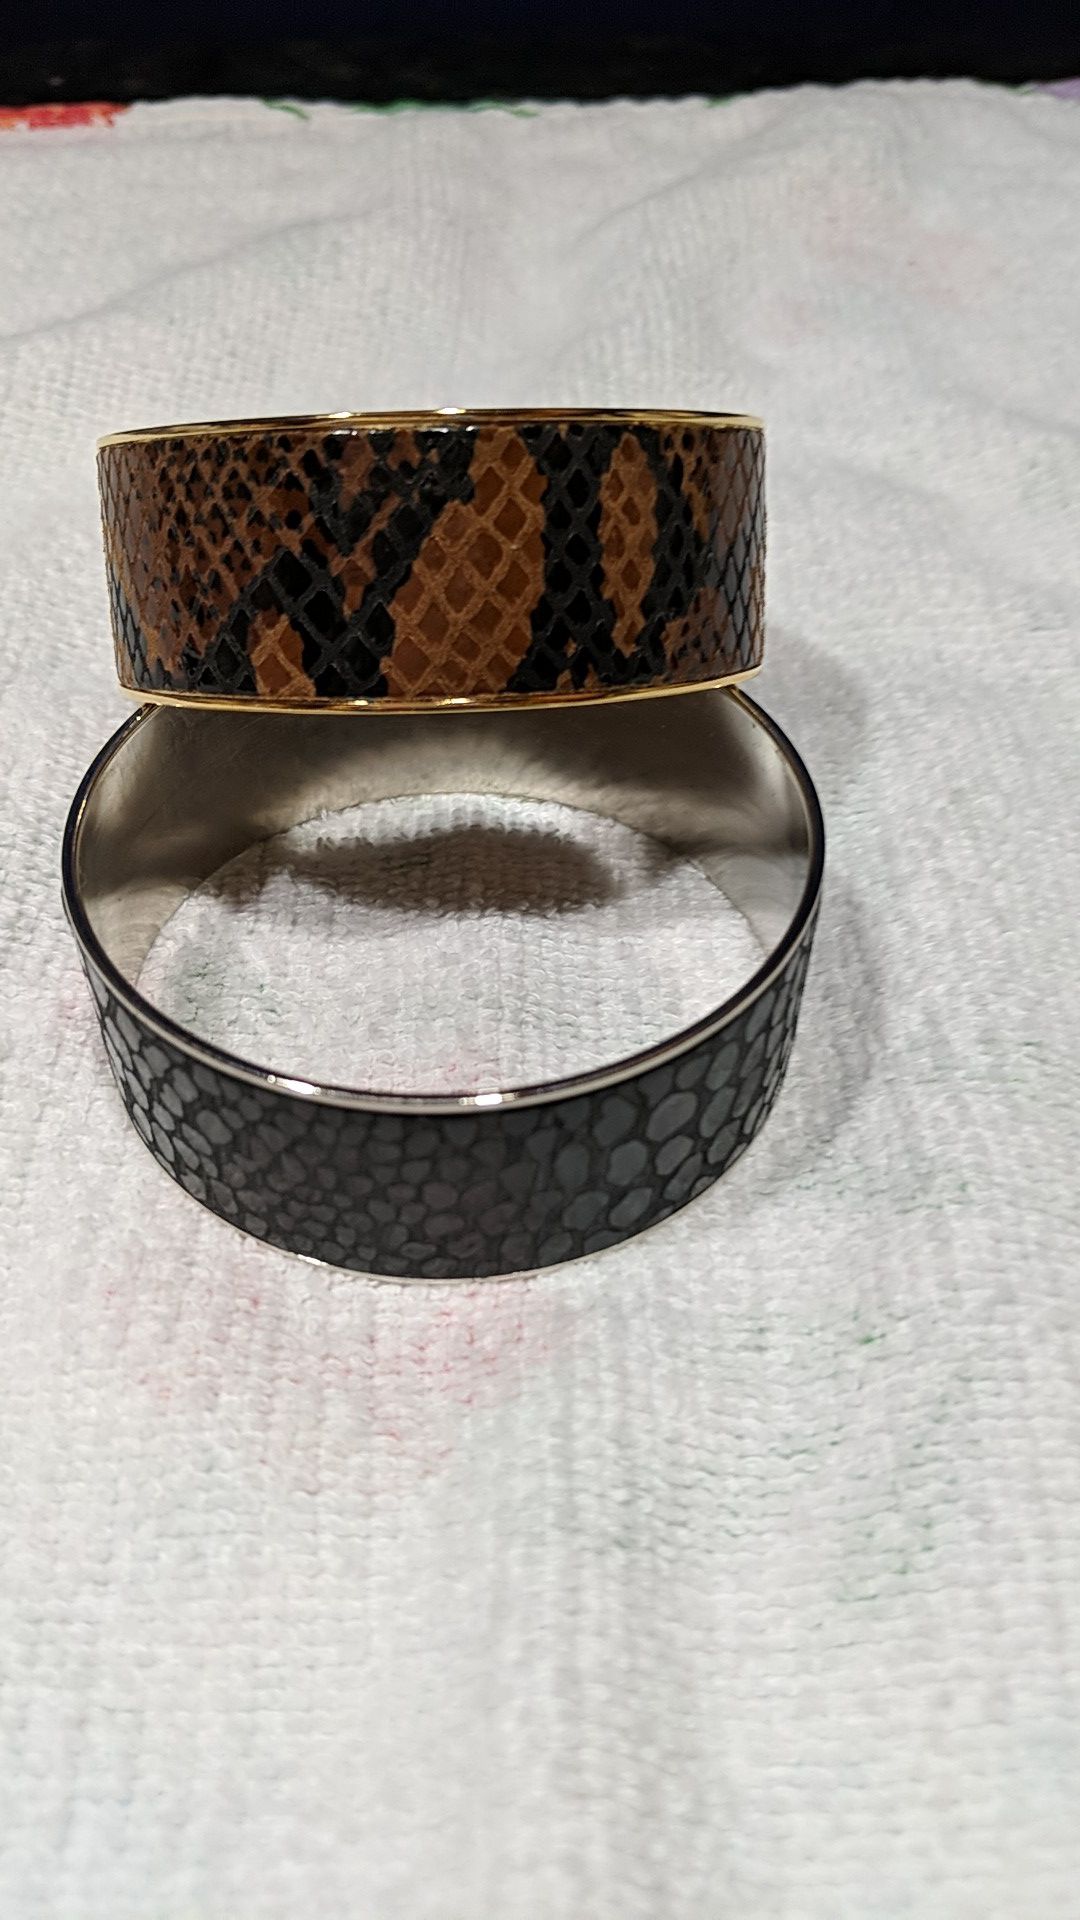 Two snakeskin bangle bracelets